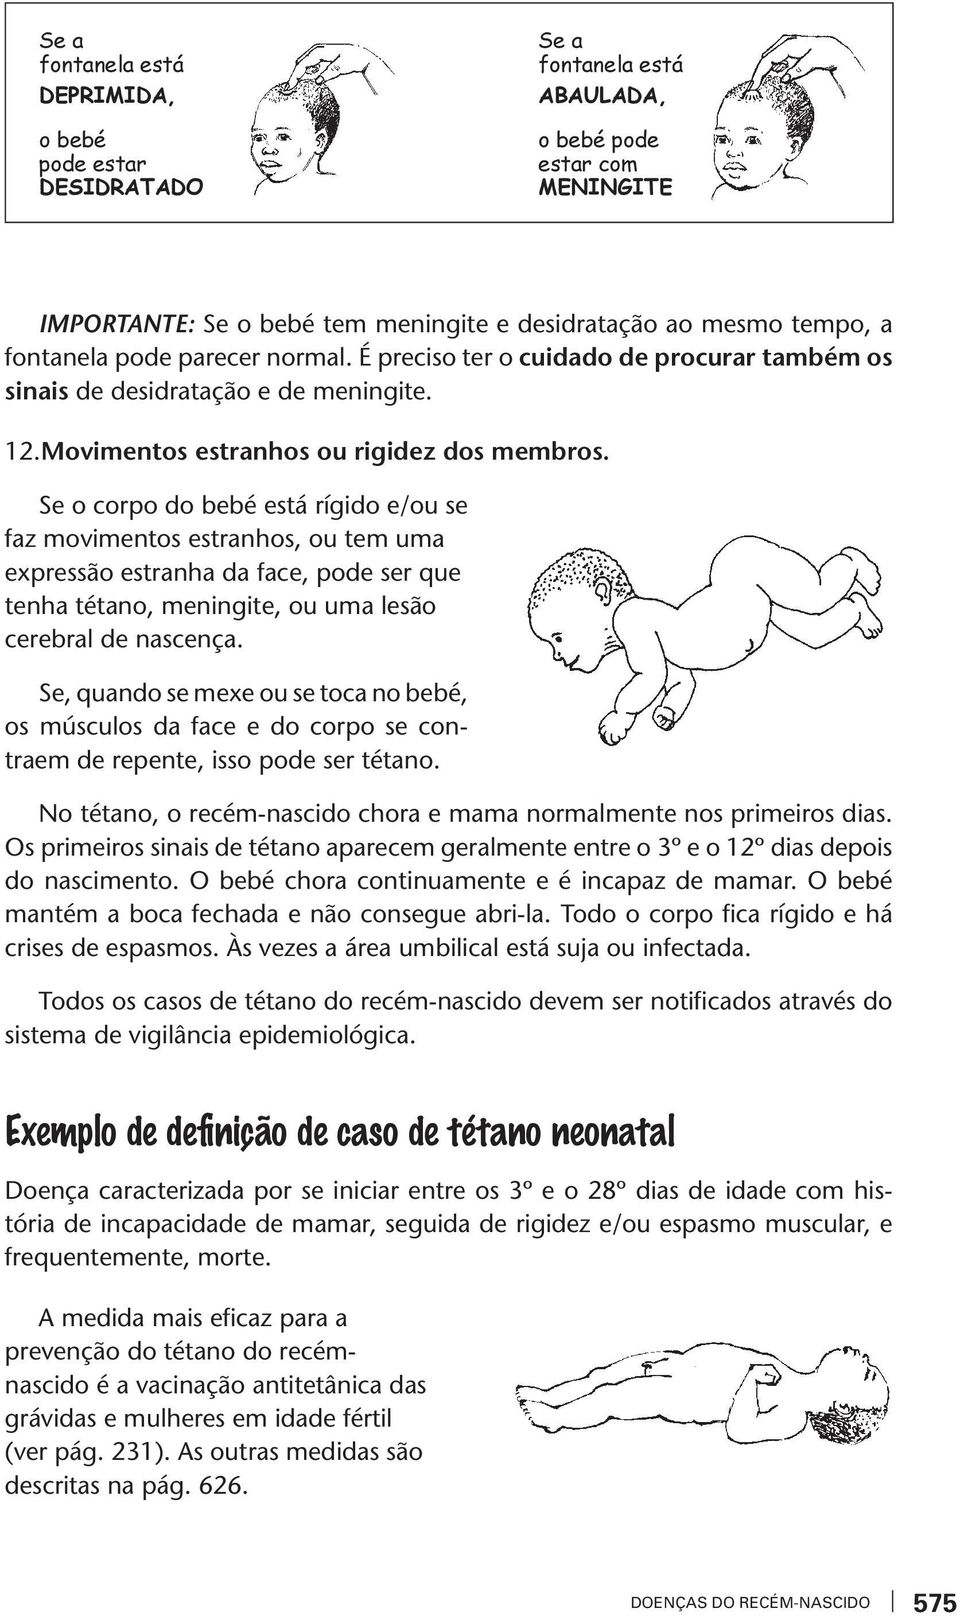 Se o corpo do bebé está rígido e/ou se faz moimentos estranhos, ou tem uma expressão estranha da face, pode ser que tenha tétano, meningite, ou uma lesão cerebral de nascença.